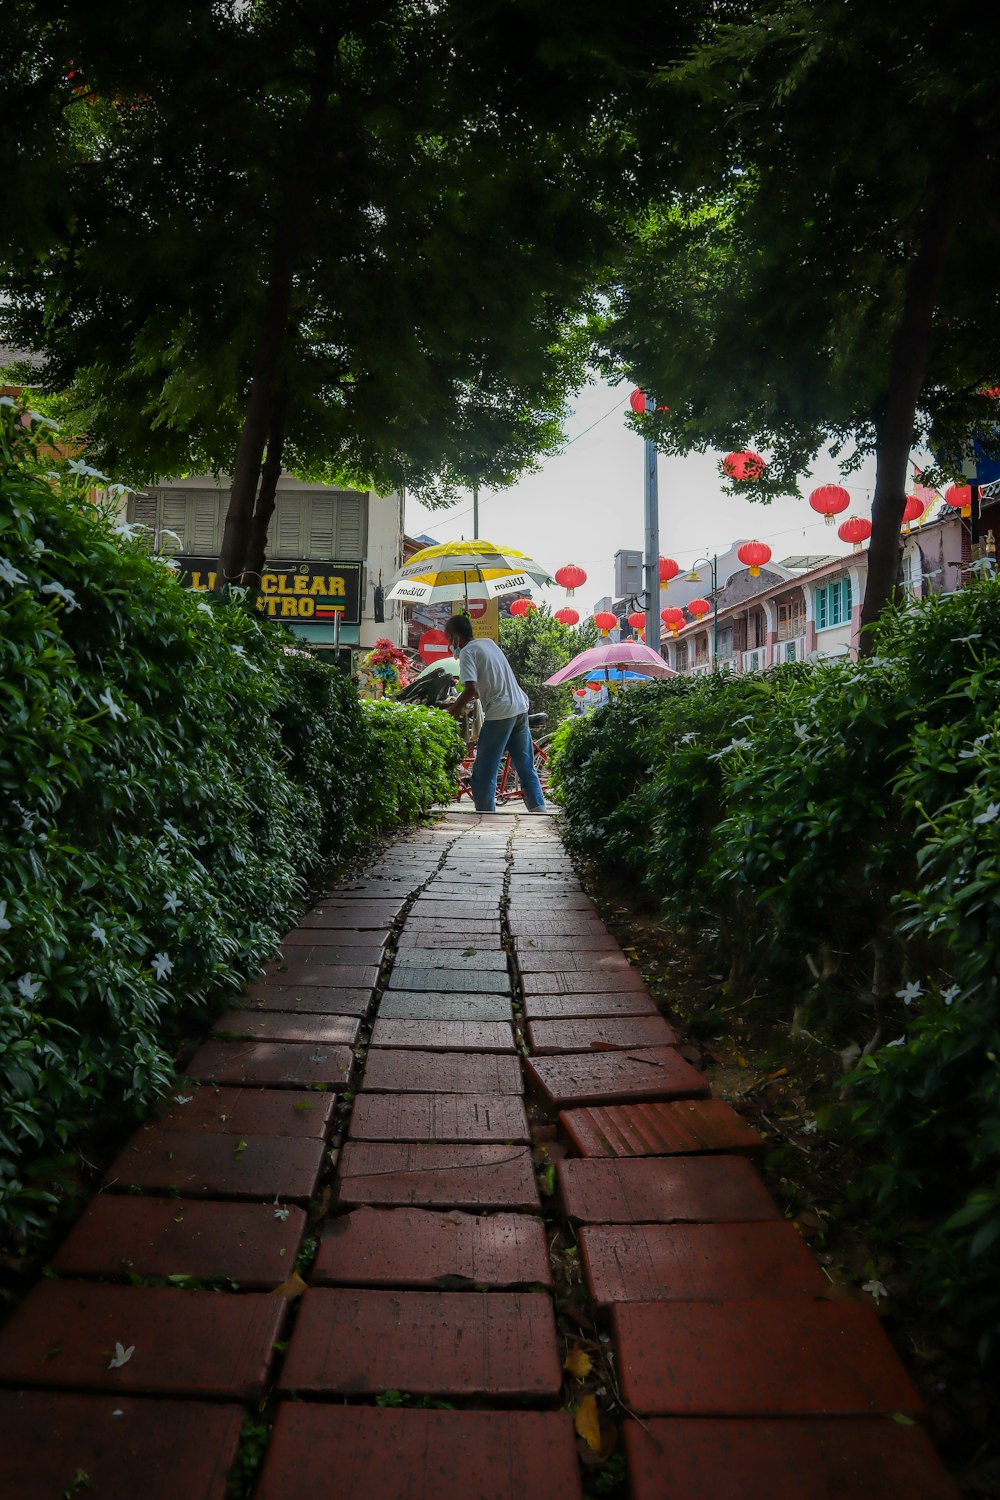 a man walking down a brick path with an umbrella